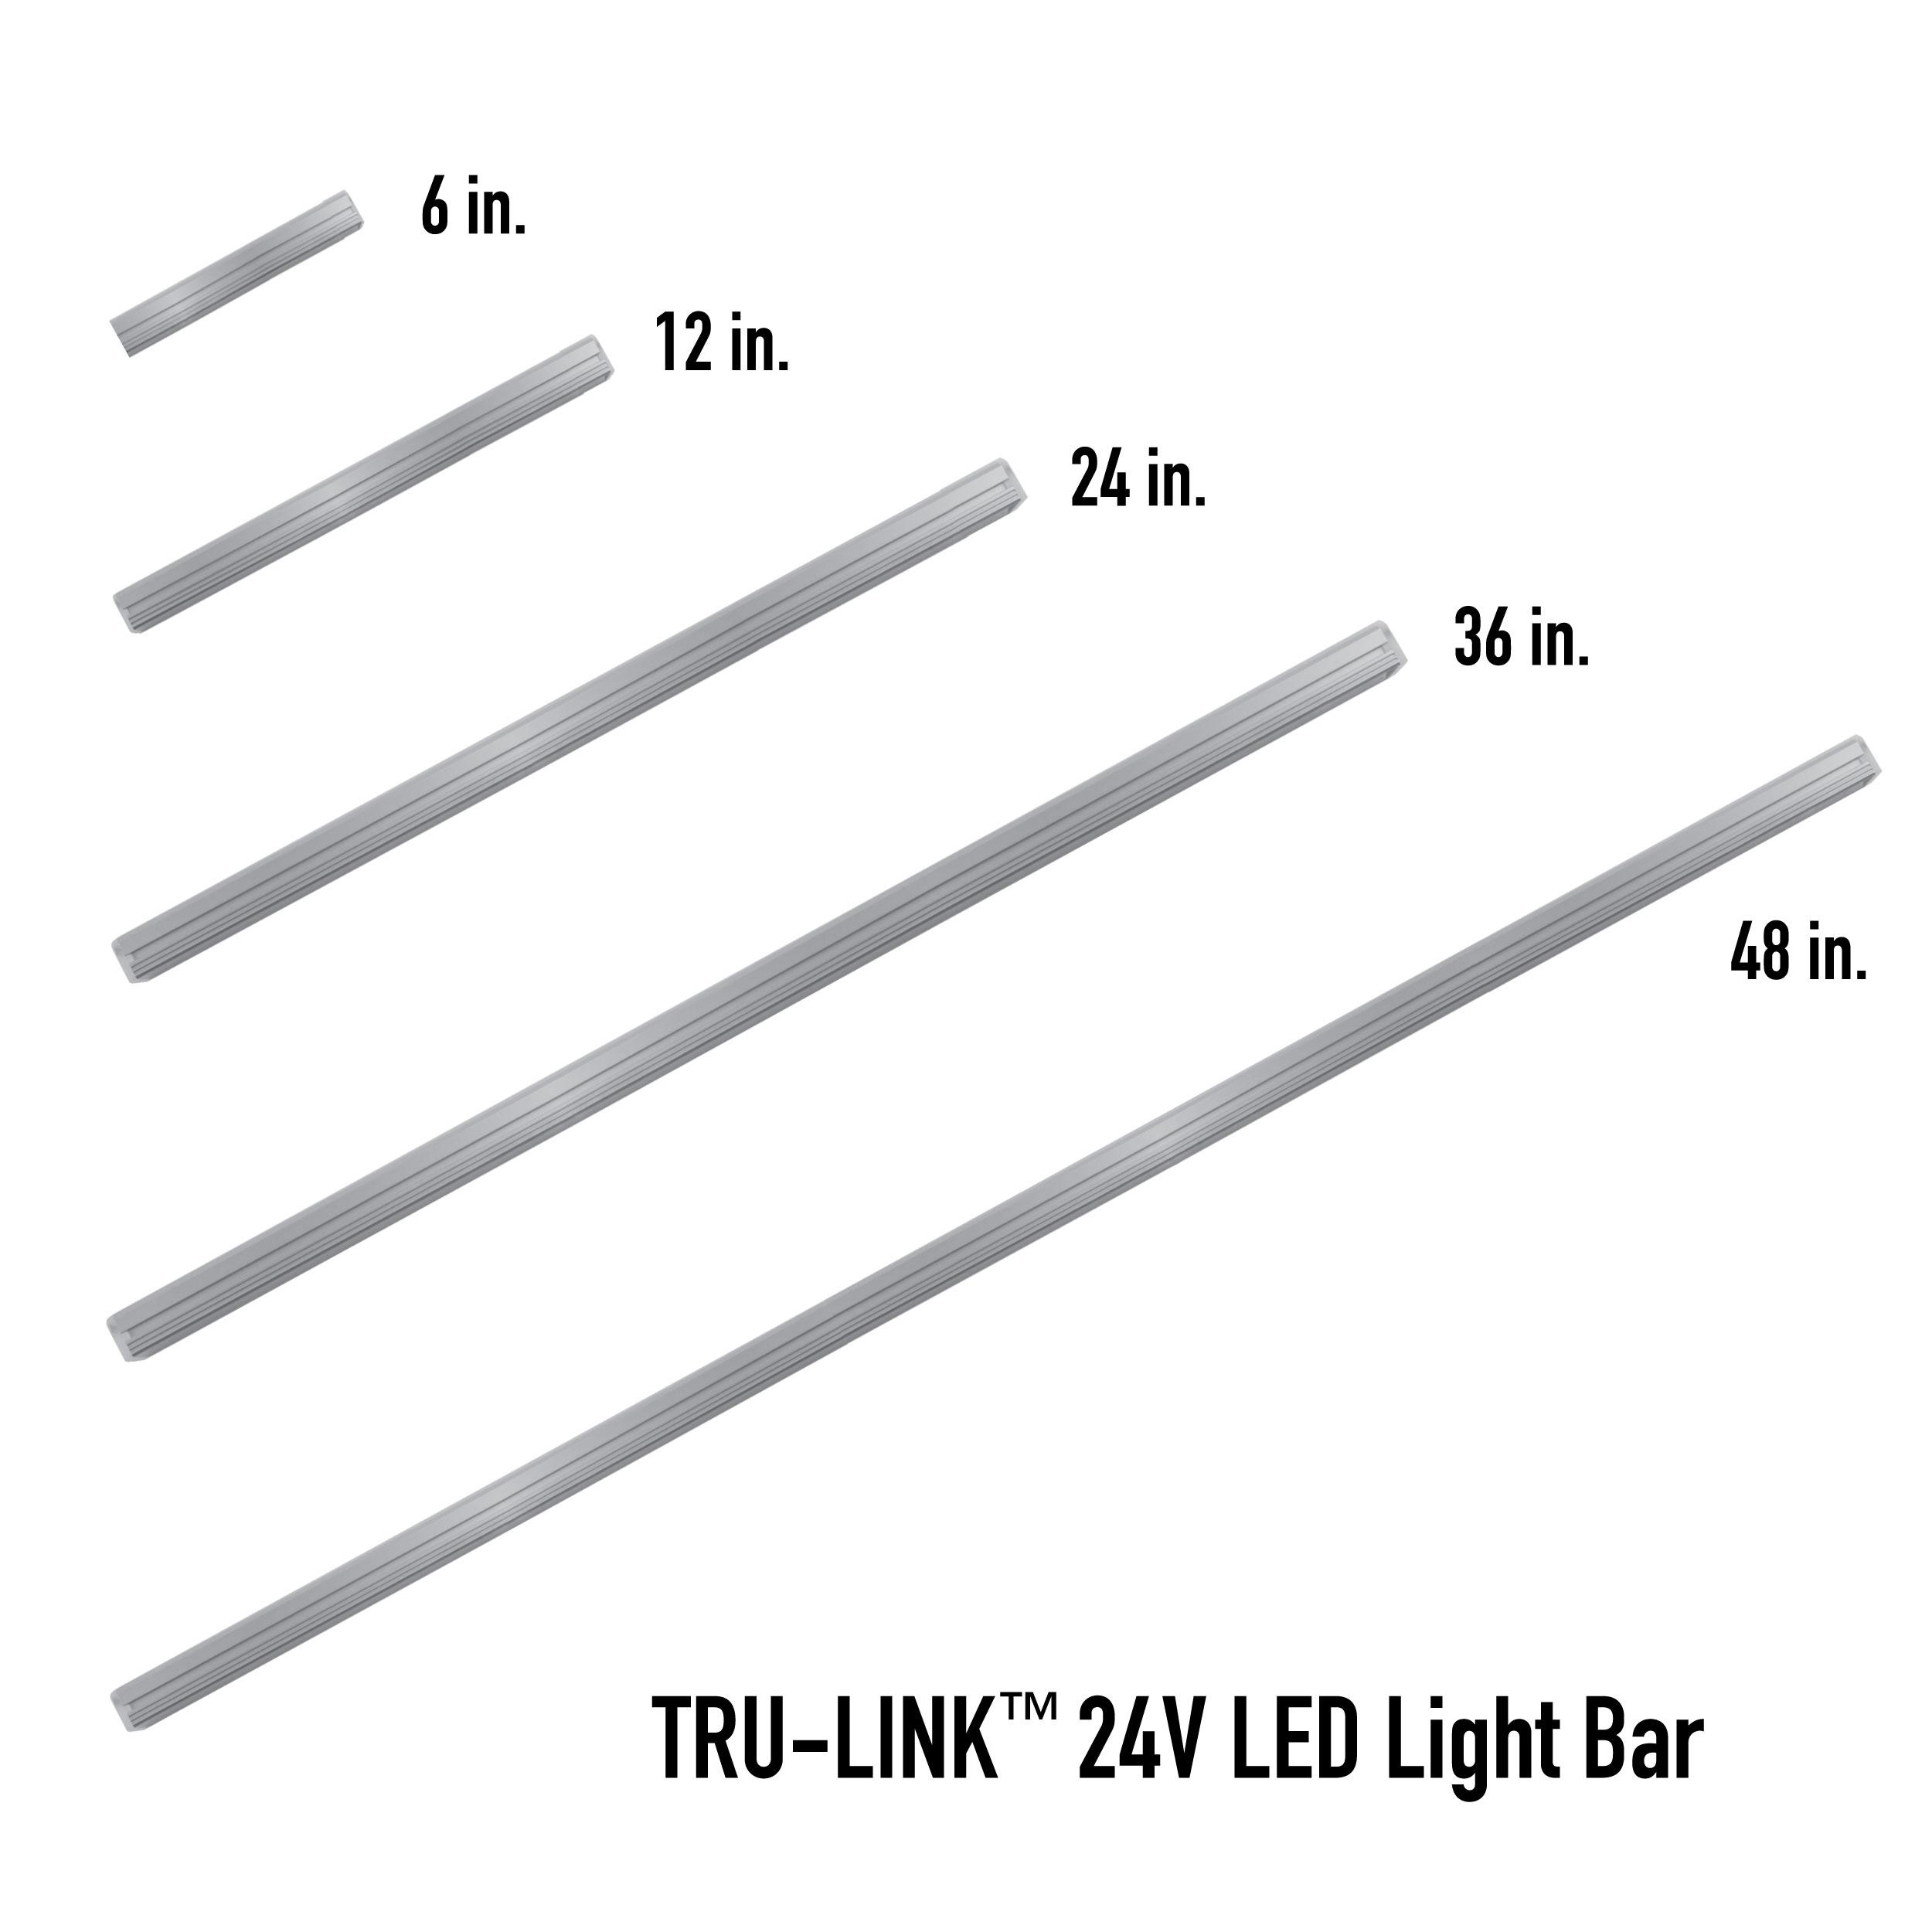 TRU-LINK LED Light Bar